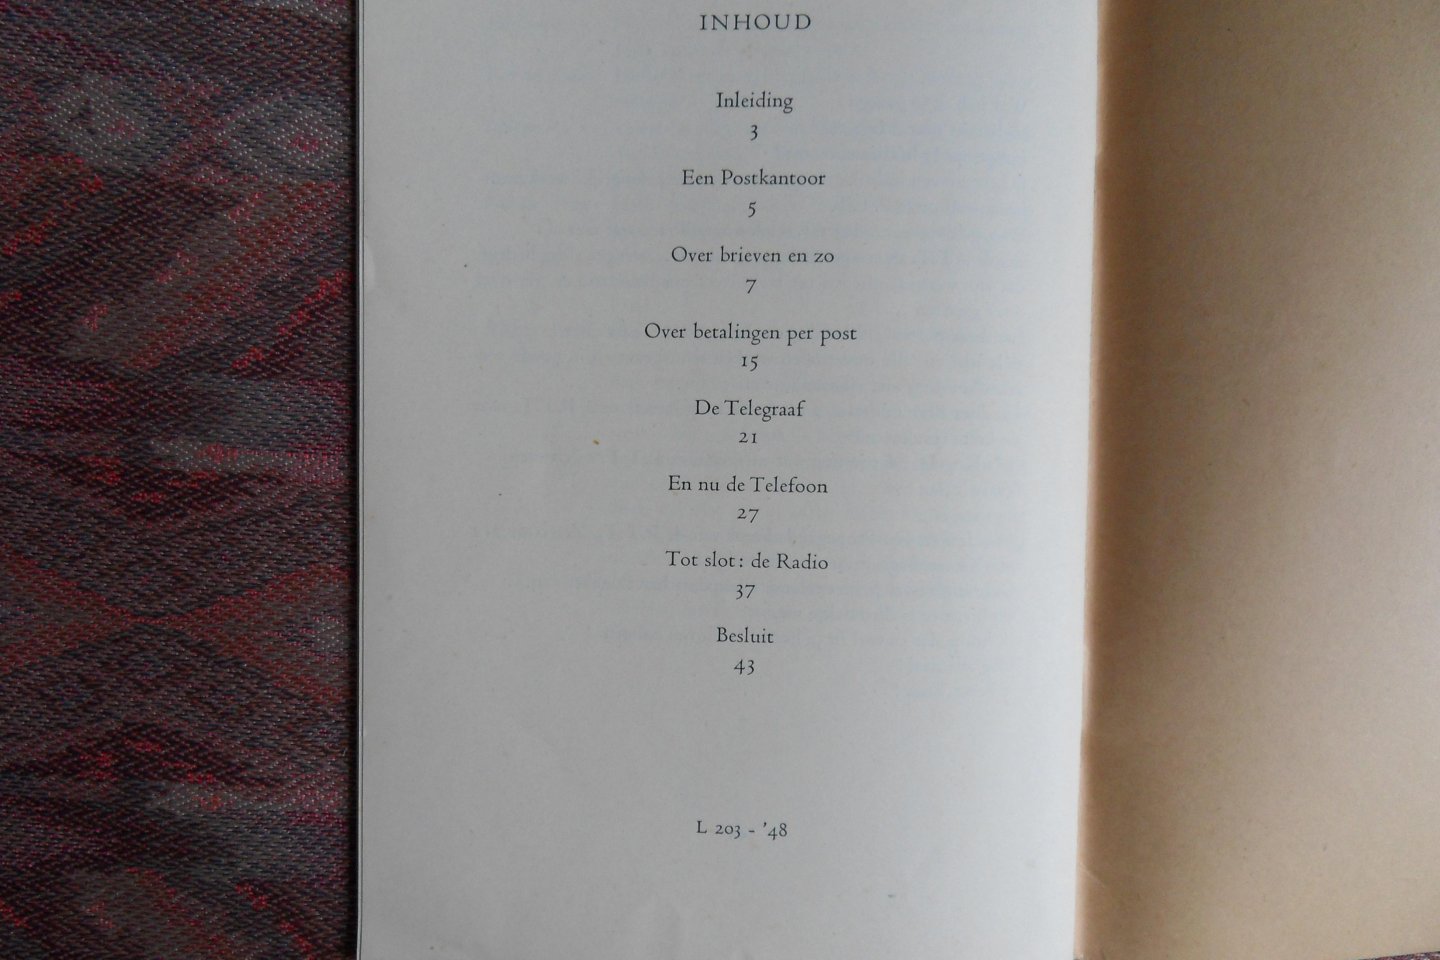 Ringelestein, dr. D.G.G. van; Roggeveen, Leonard. - Drie Letters PTT. - Met platen van Jo Spier. -[ !  de originele uitgave uit 1948 ].